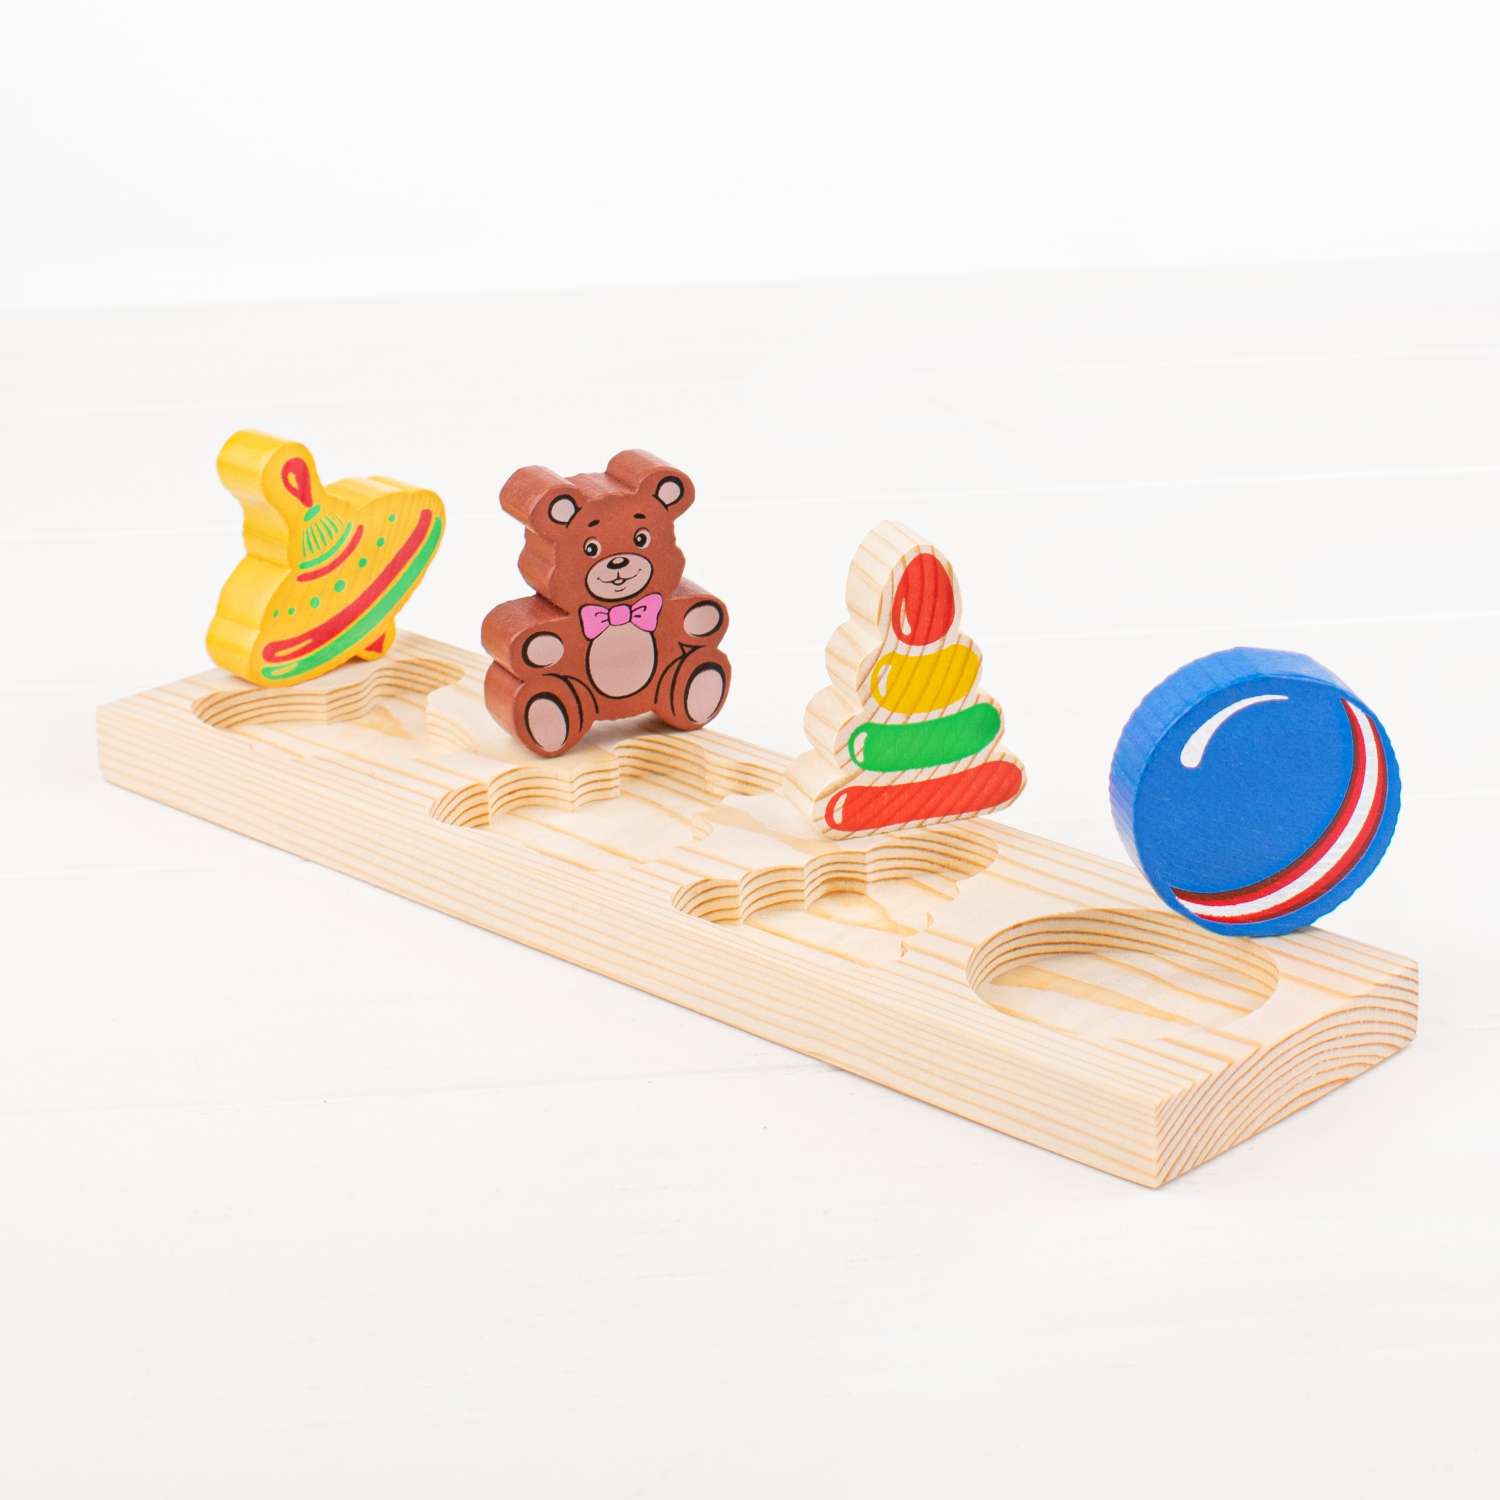 Рамка-Вкладыш Томик Игрушки 5 деталей 451 развивающая деревянная игрушка - фото 3